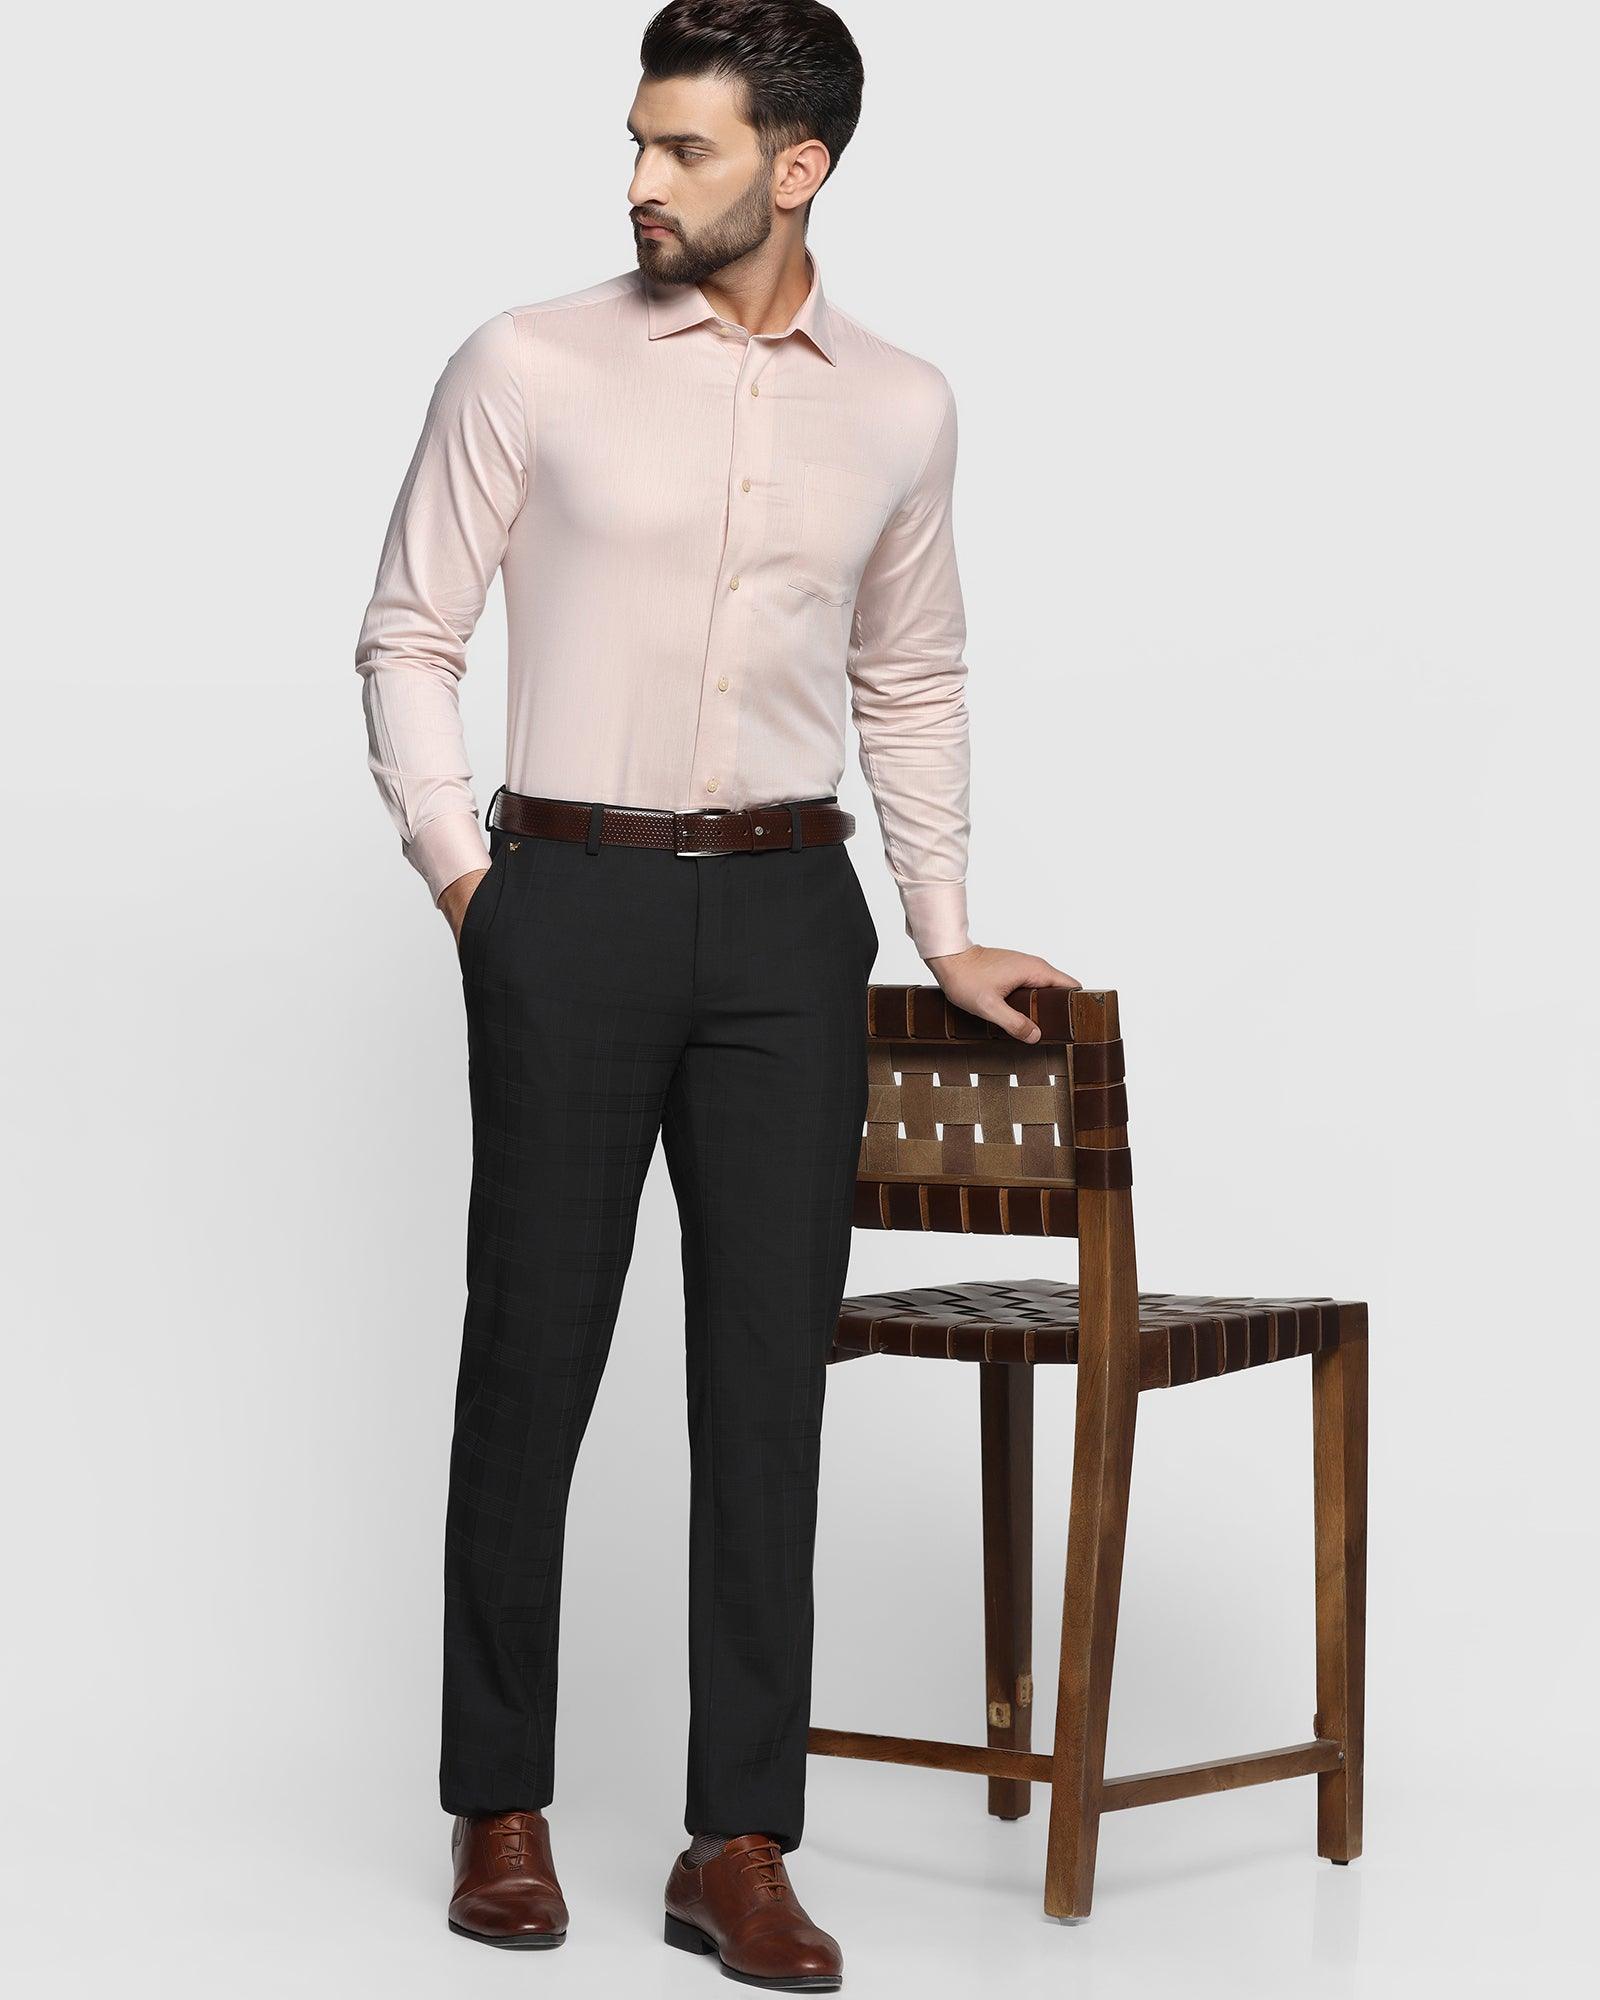 OTTO - D Grey Plain Formal Shirt. Relax Fit - BIPASA_12 – ottostore.com